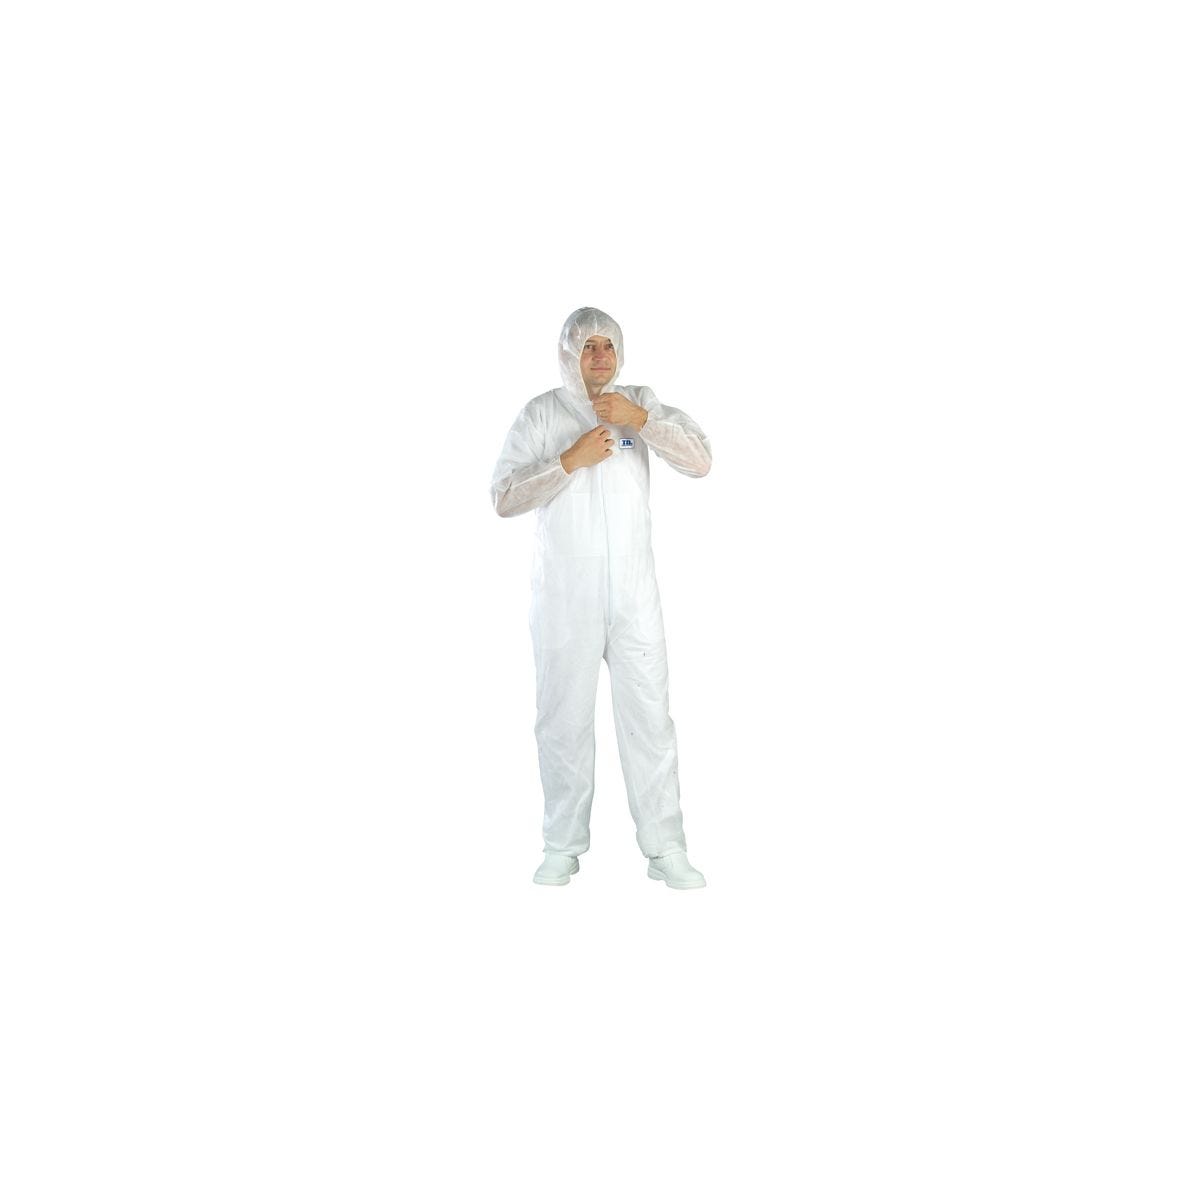 Combinaison SPP 40g/m² blanc avec capuche - COVERGUARD - Taille 2XL 0